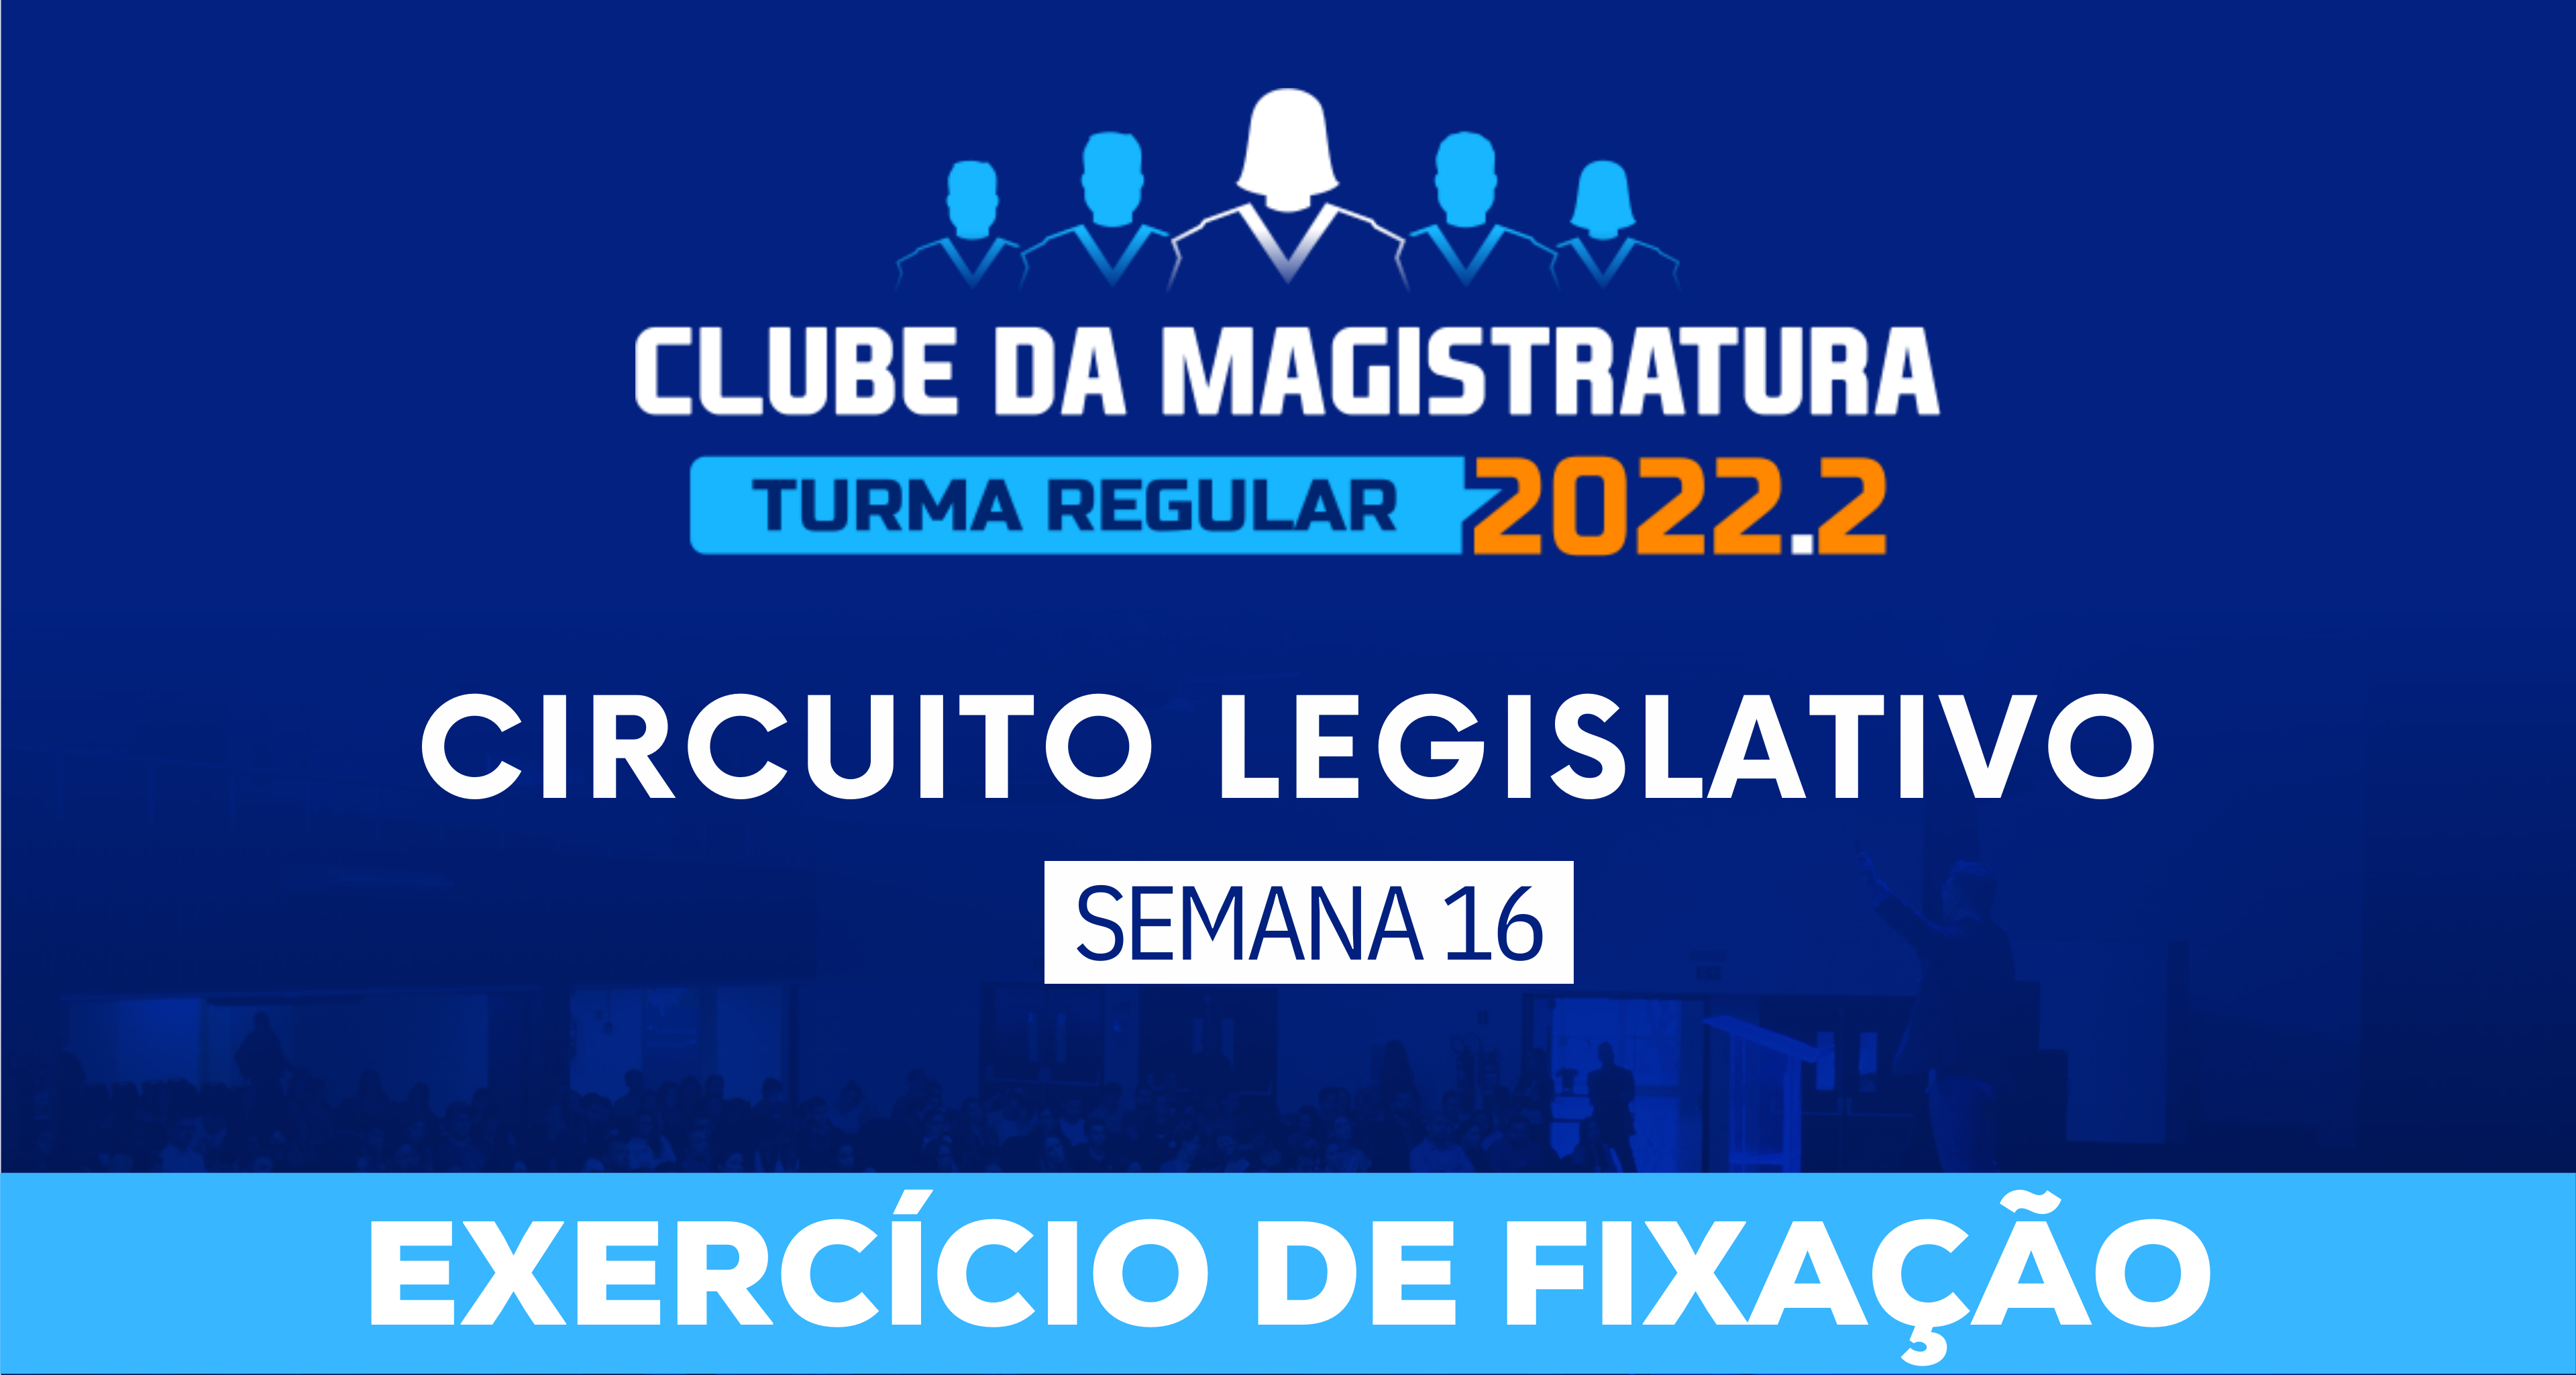 Circuito Legislativo 2022.2 (Clube da Magistratura - Semana 16)